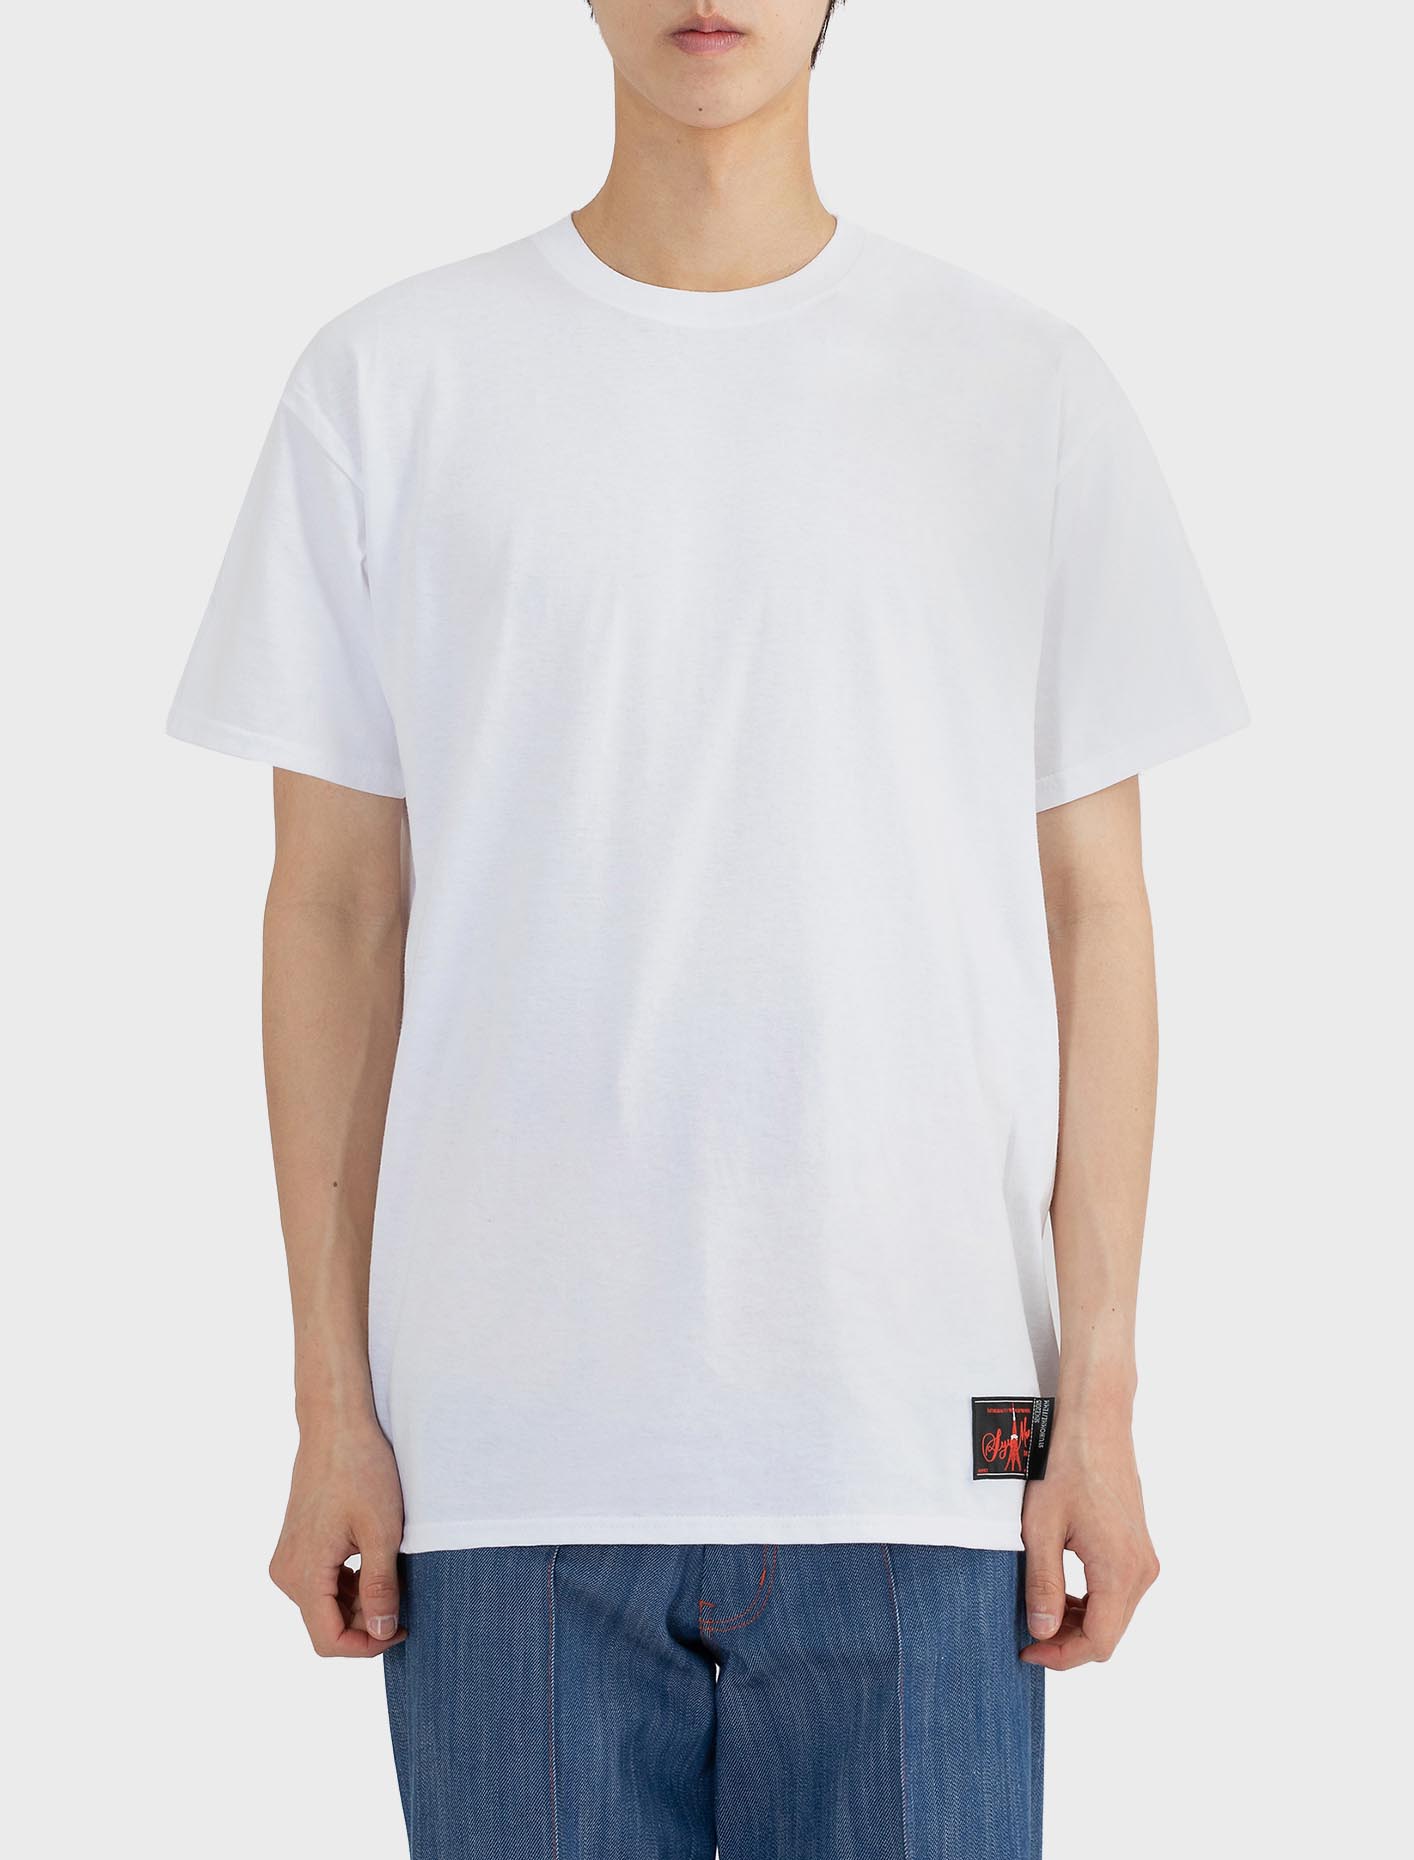 슈만 옐로우 로고 1팩 티셔츠 화이트